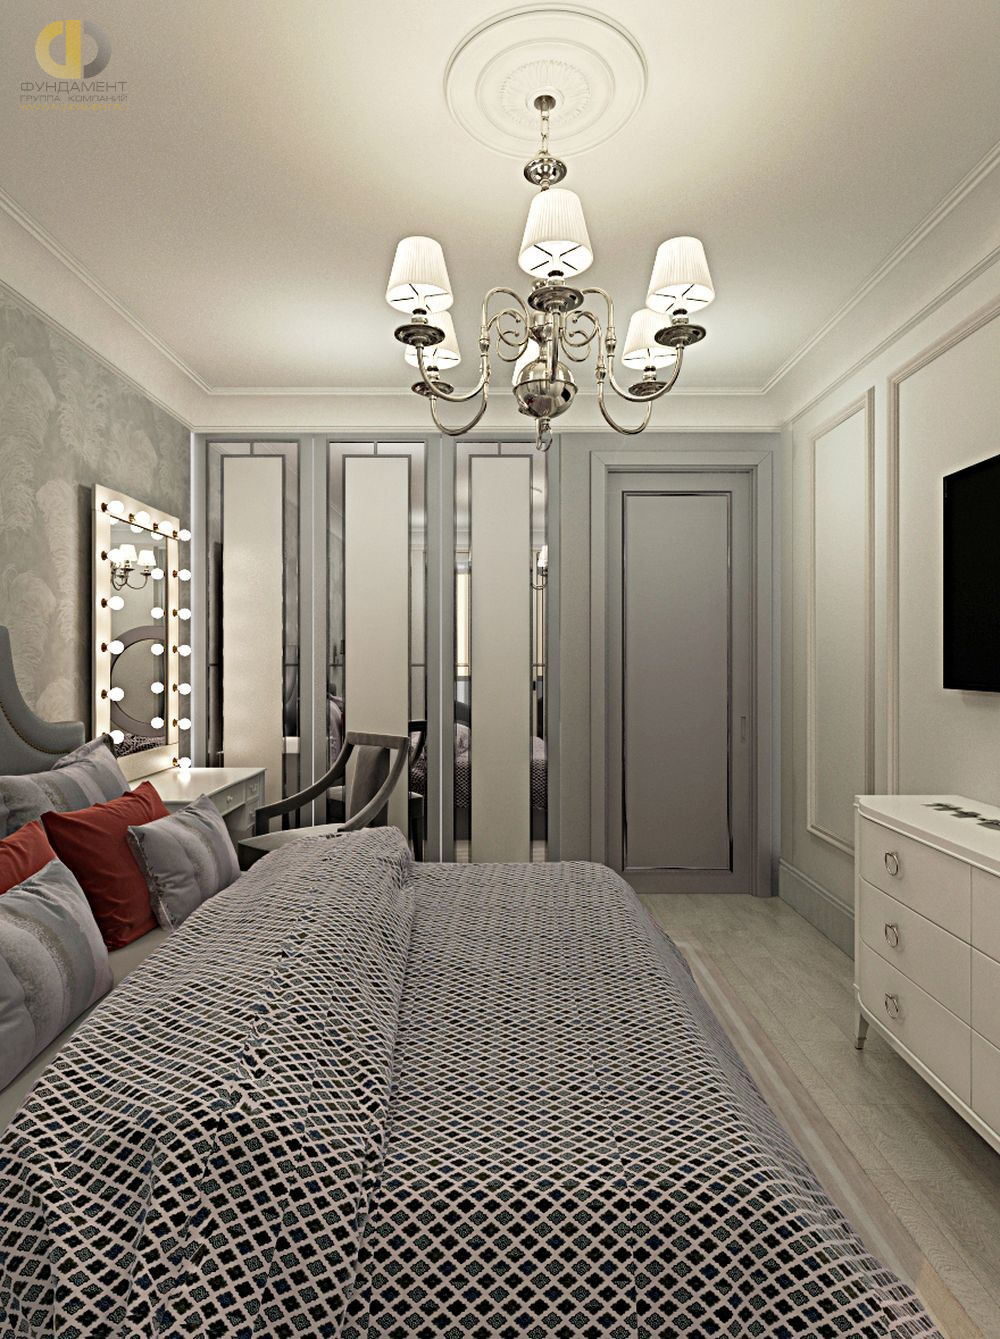 Спальня в стиле дизайна классицизм по адресу МО, г. Одинцово, ул. Сколковская, д. 3Б, 2019 года